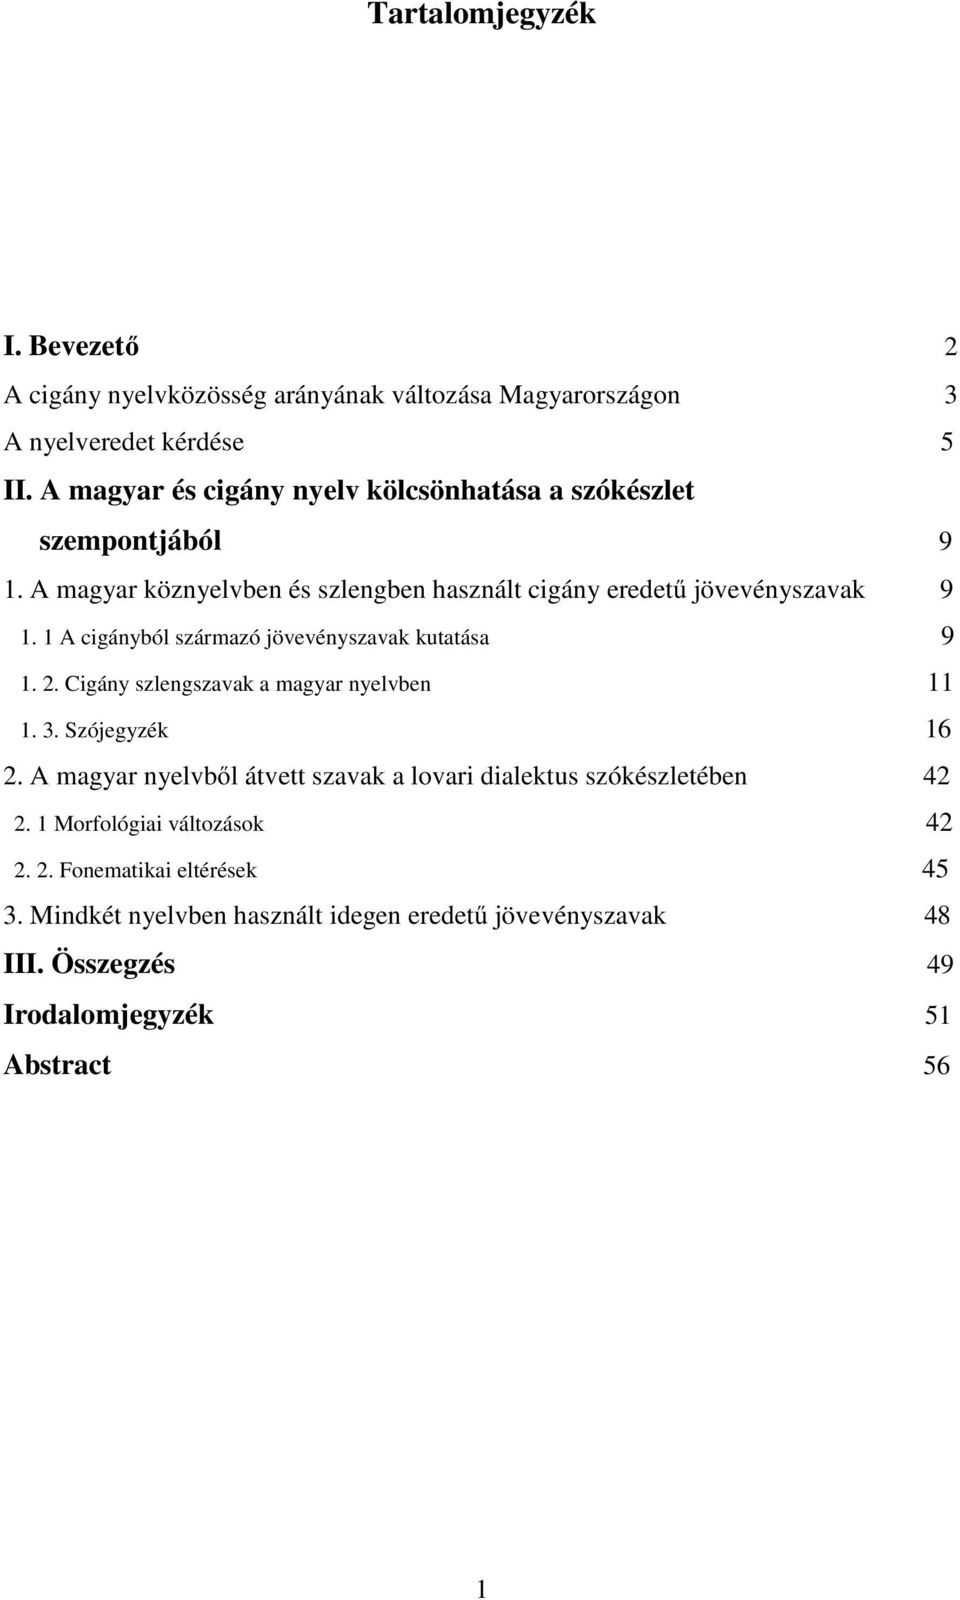 1 A cigányból származó jövevényszavak kutatása 9 1. 2. Cigány szlengszavak a magyar nyelvben 11 1. 3. Szójegyzék 16 2.